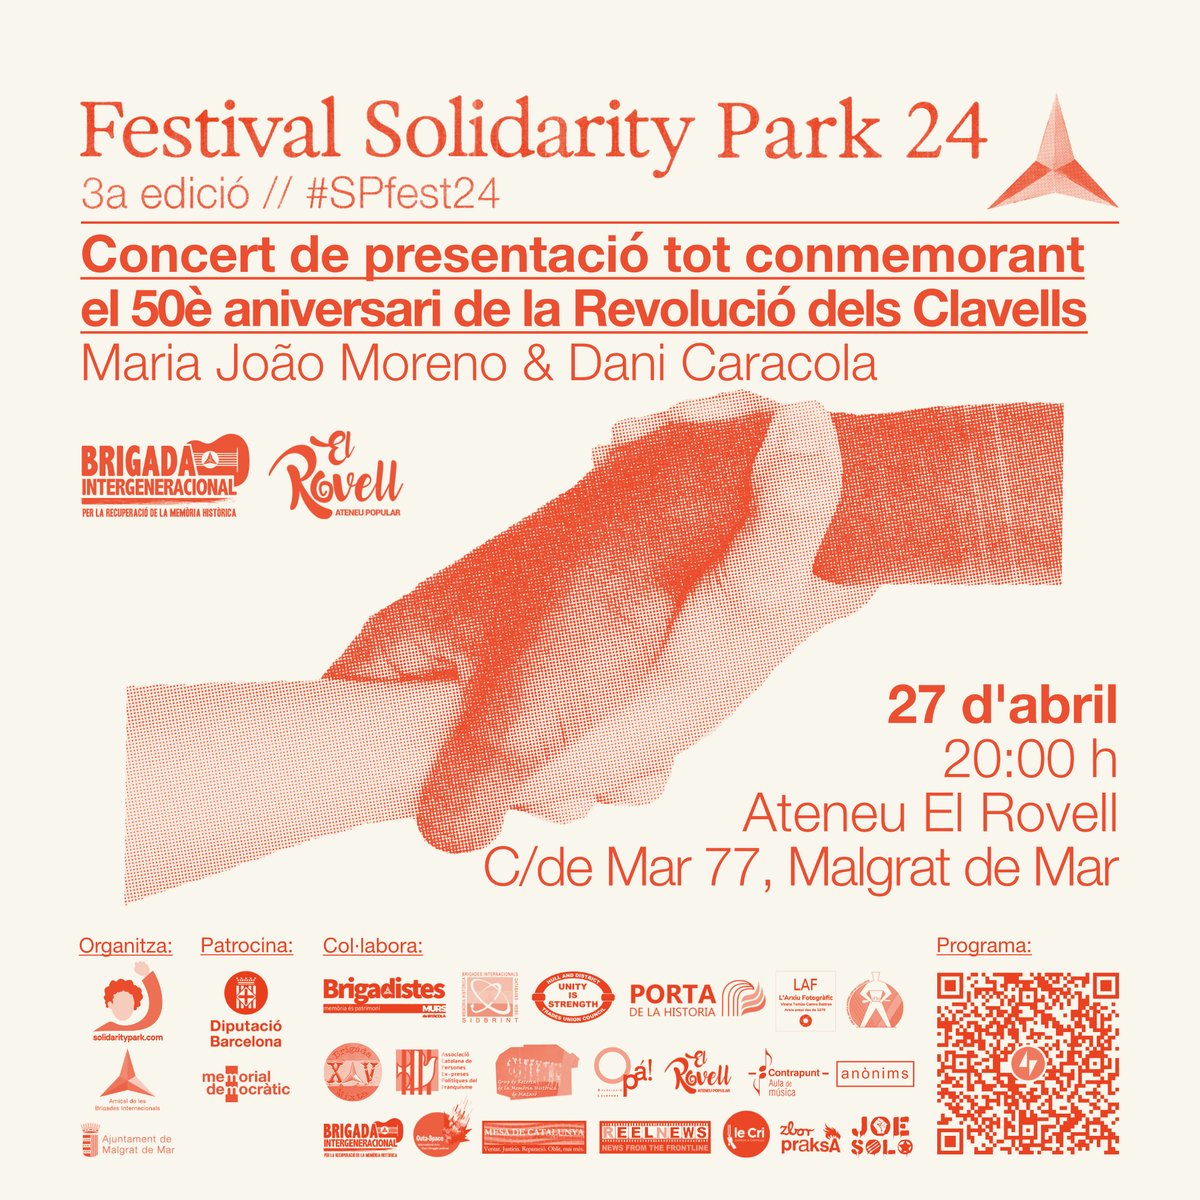 En aquest esdeveniment presentarem el programa complet del festival Solidarity Park 2024 alhora que recordarem el 50è aniversari de la Revolució dels Clavells a Portugal. Esperem que pugueu venir. Info@solidaritypark.com #SPfest24